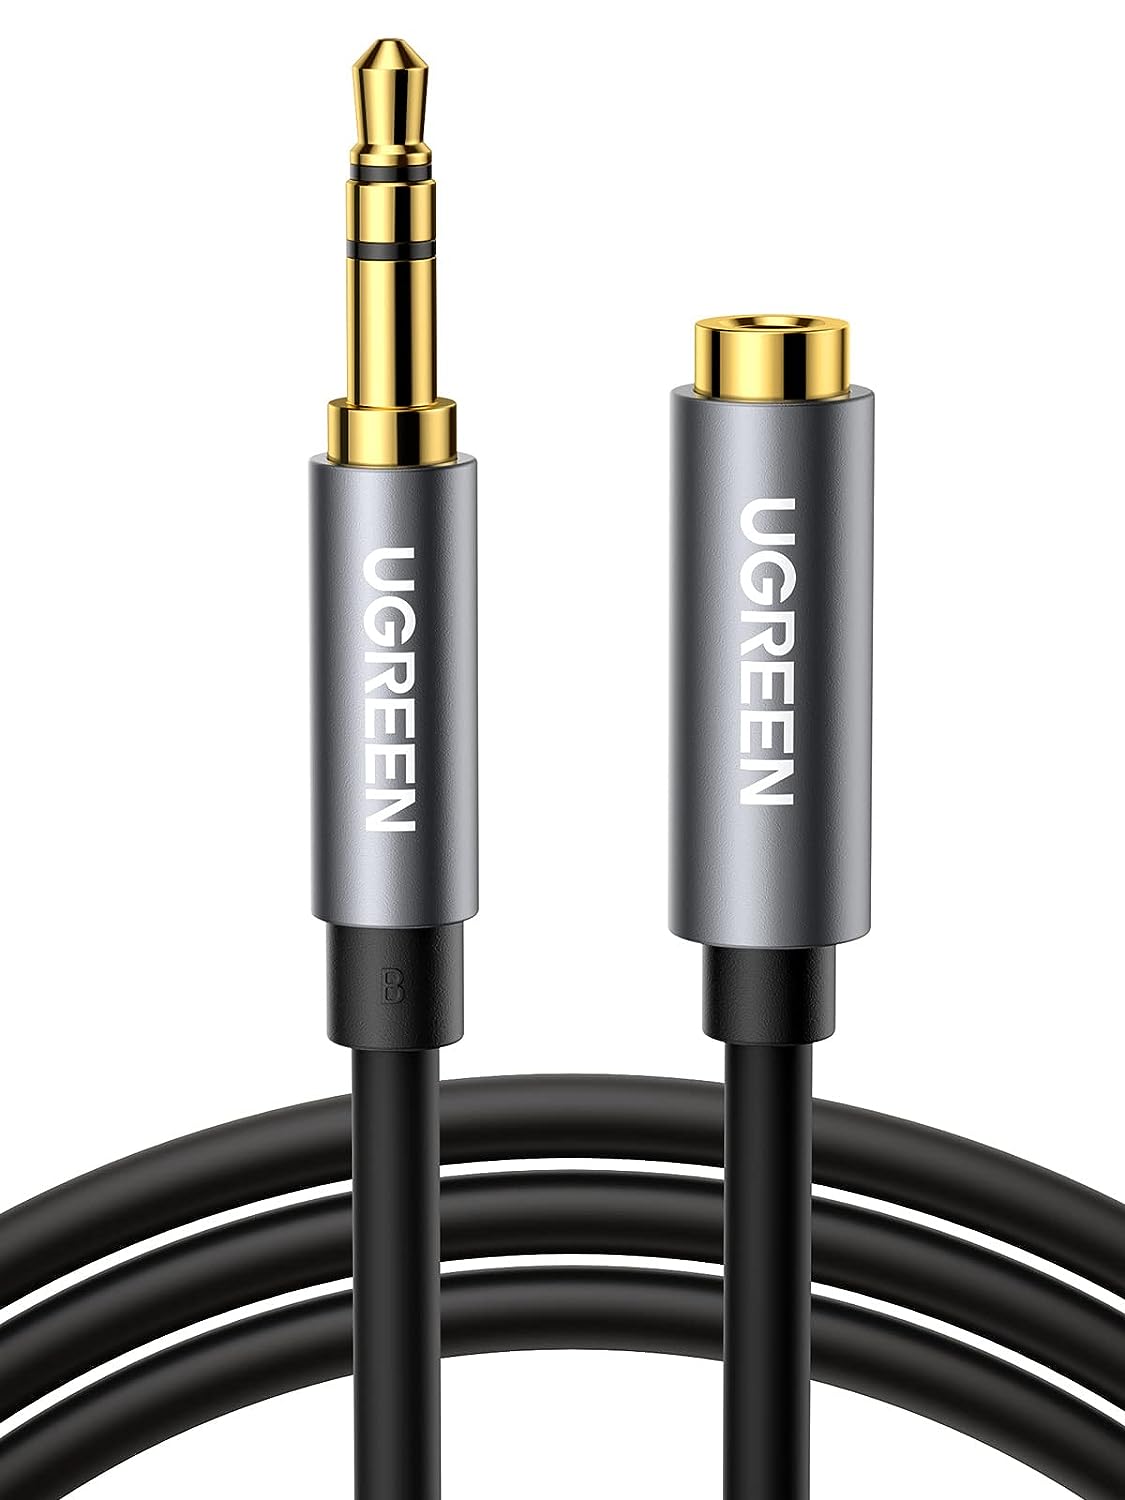 10592 Аудио кабель 3,5мм - 3,5мм UGREEN AV118, цвет - черный, длина 1м.